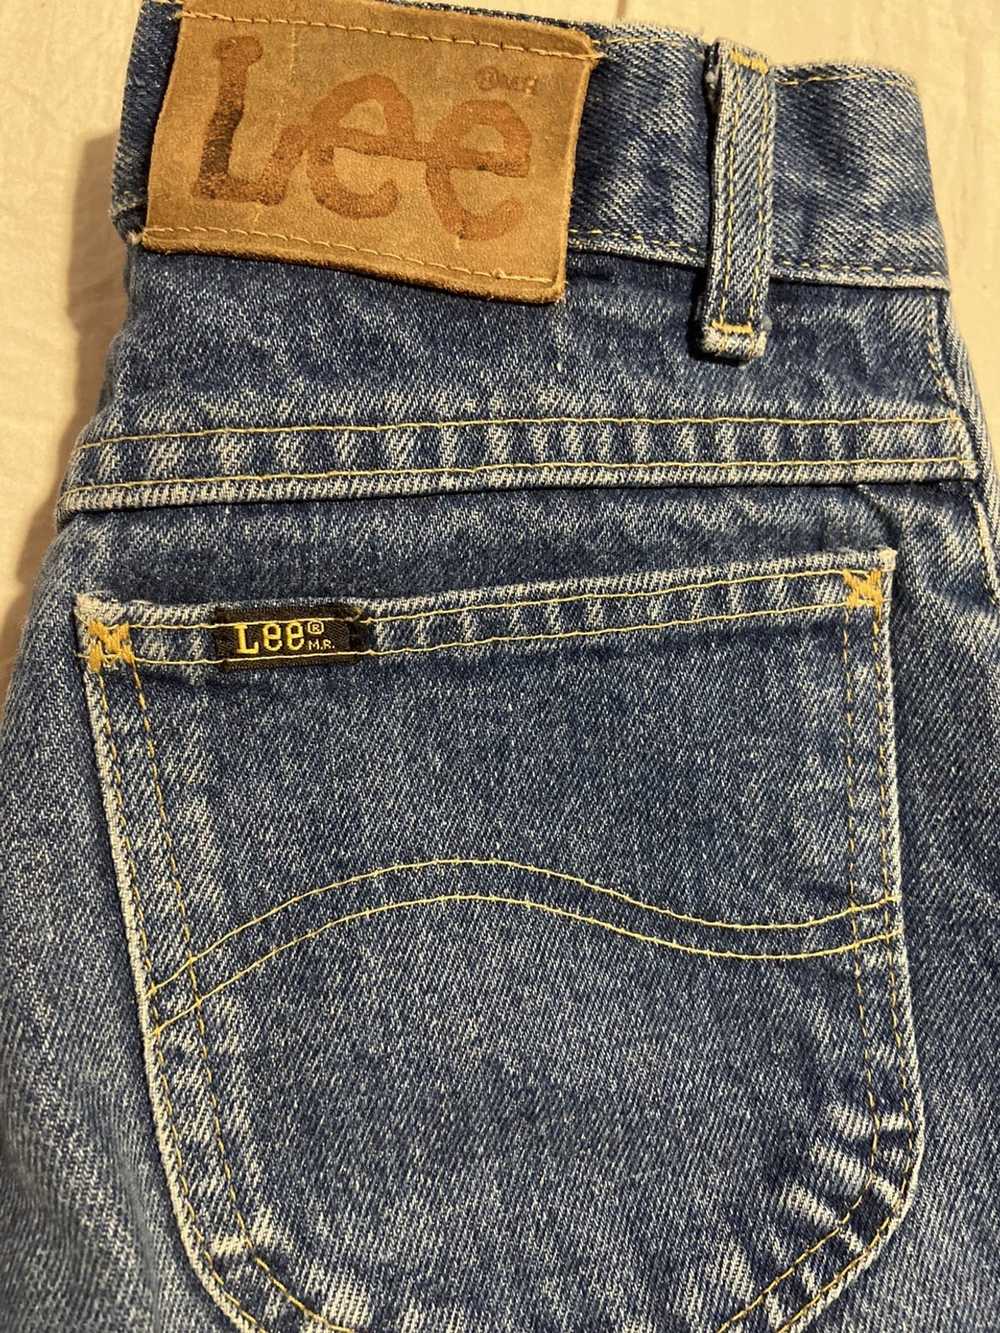 Lee Vintage Lee Jeans Blue Denim - image 1